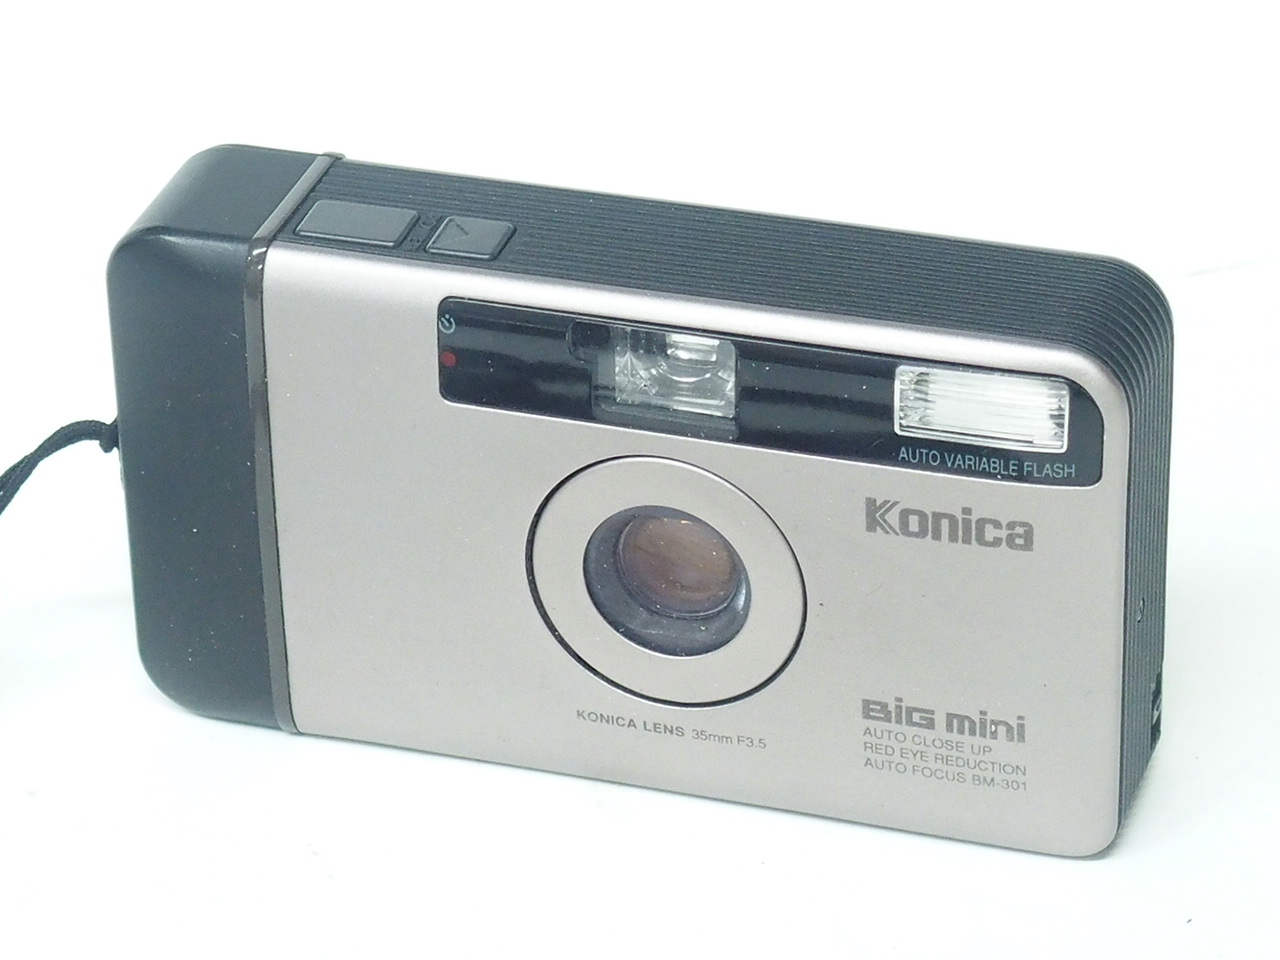 【動作確認済】Konica コニカ BiG mini ビッグミニ BM-301